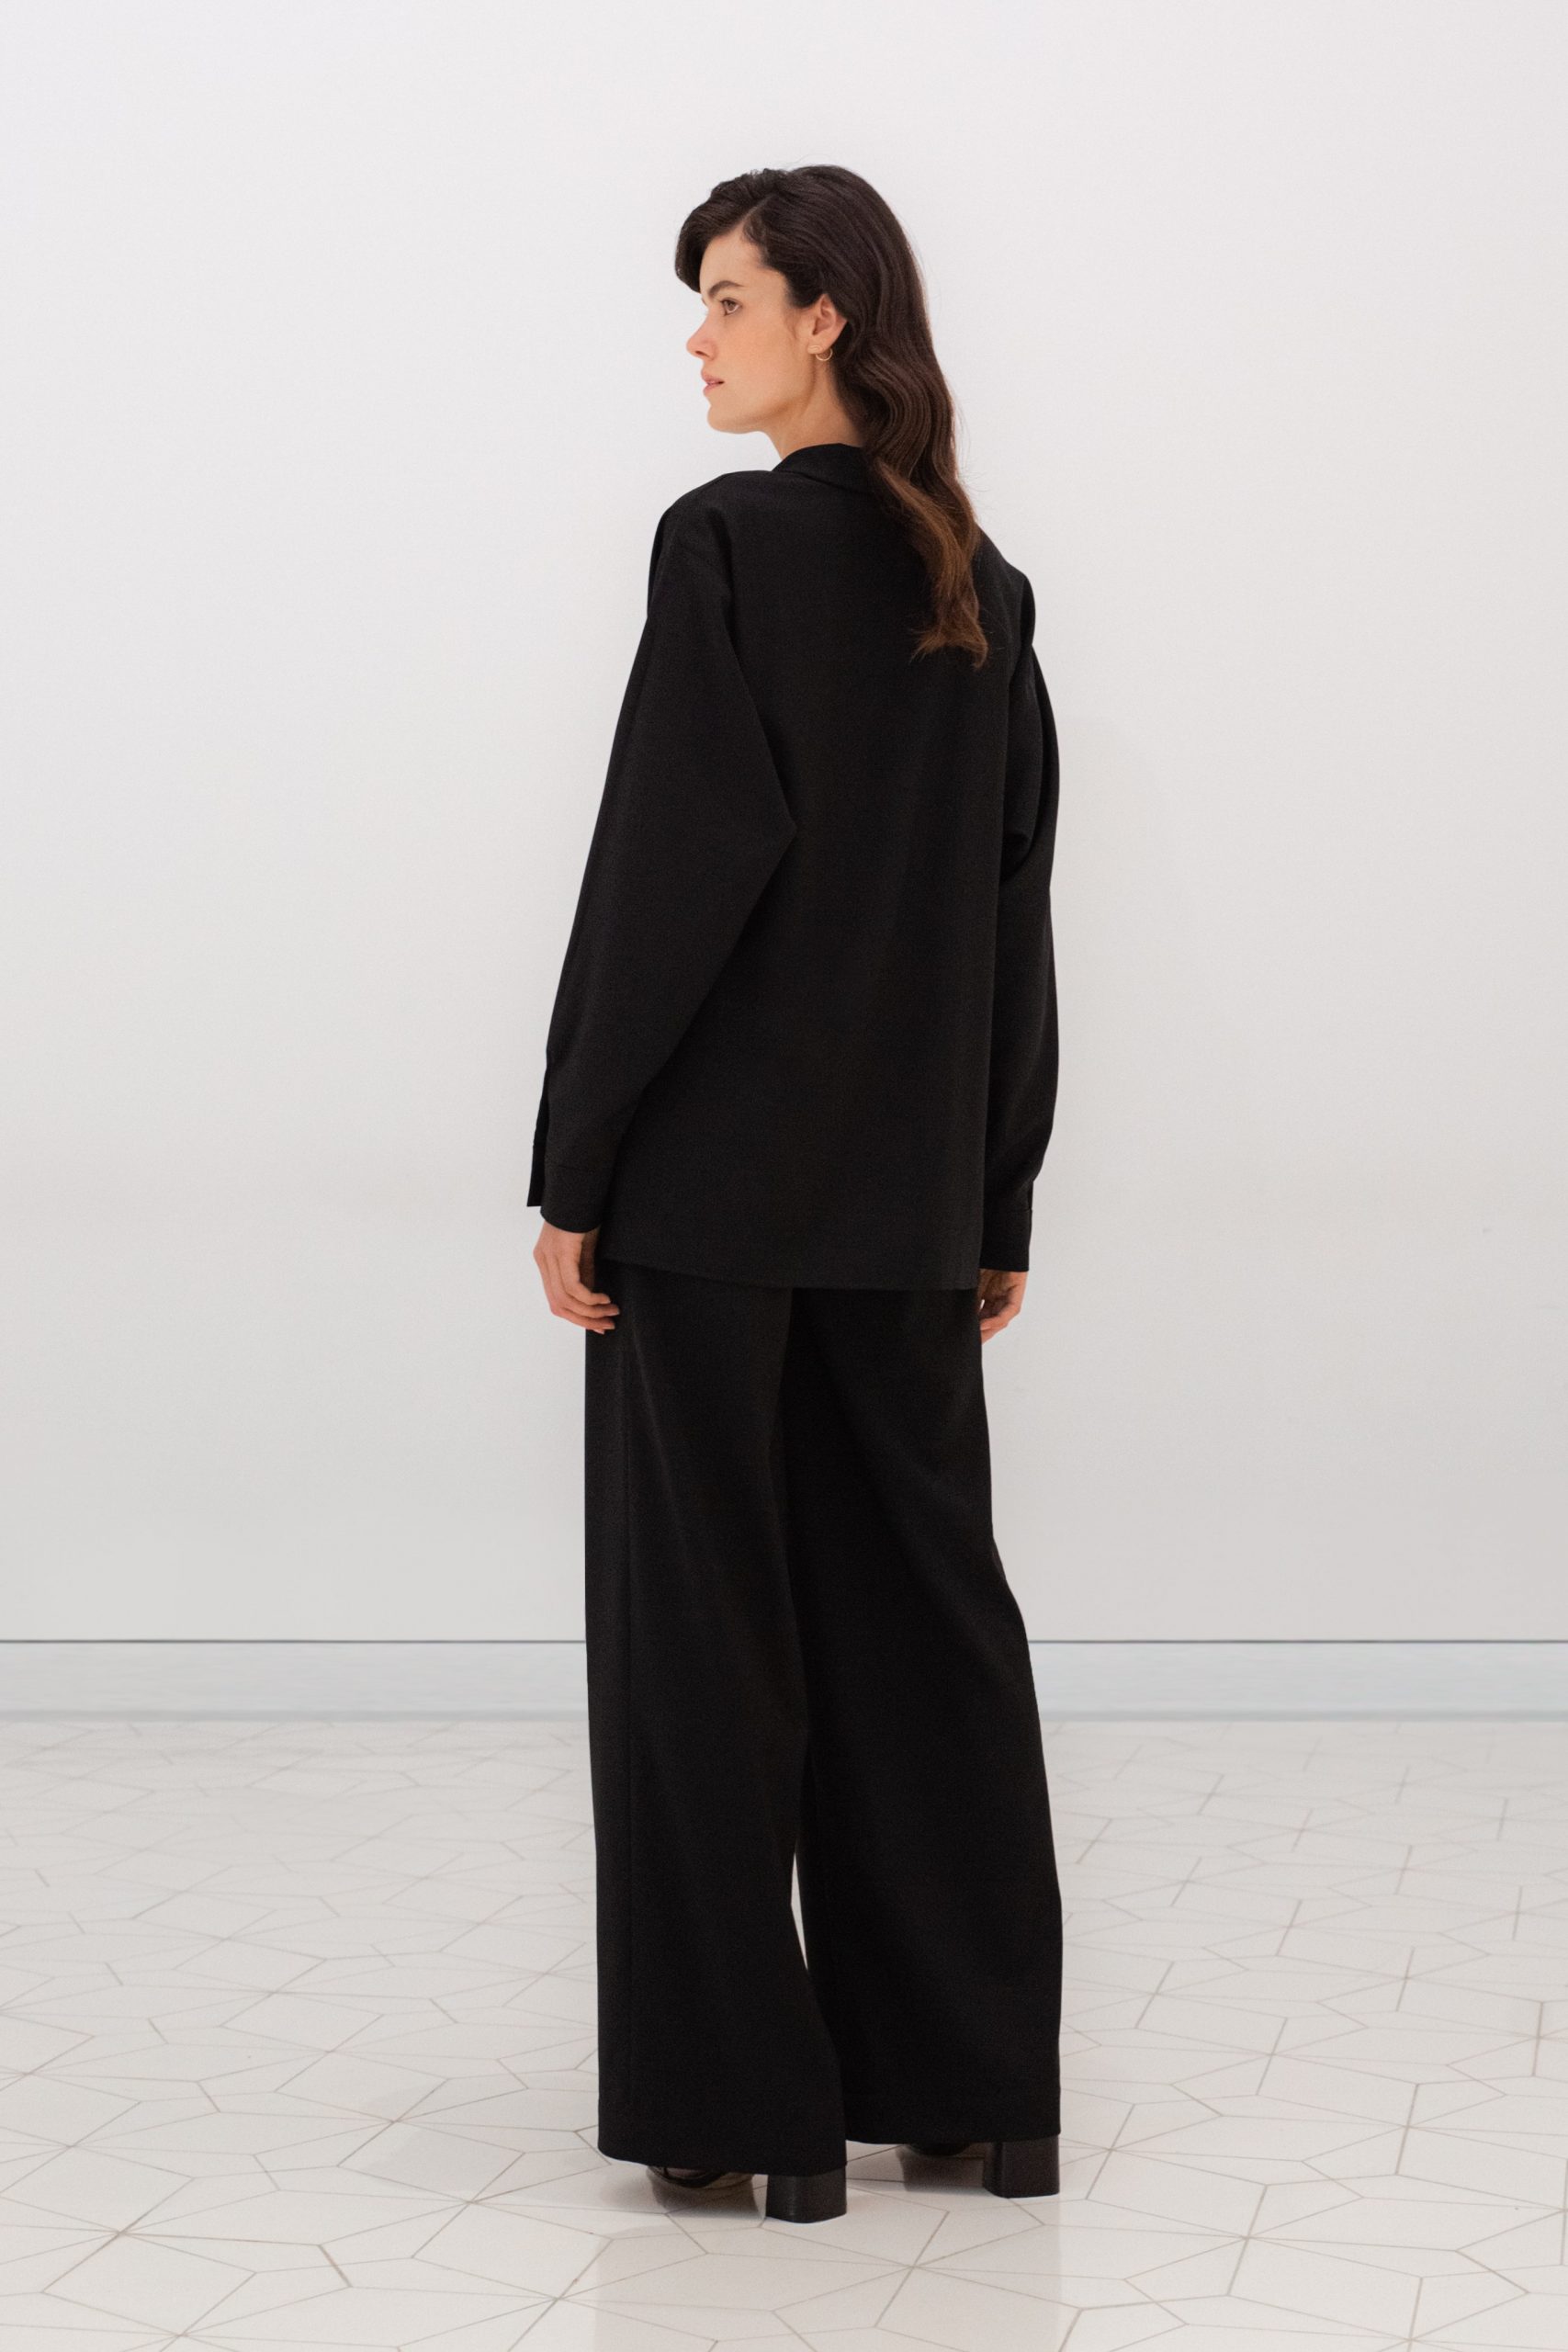 długie czarne wełniane spodnie damskie typu kuloty marki Plana tył